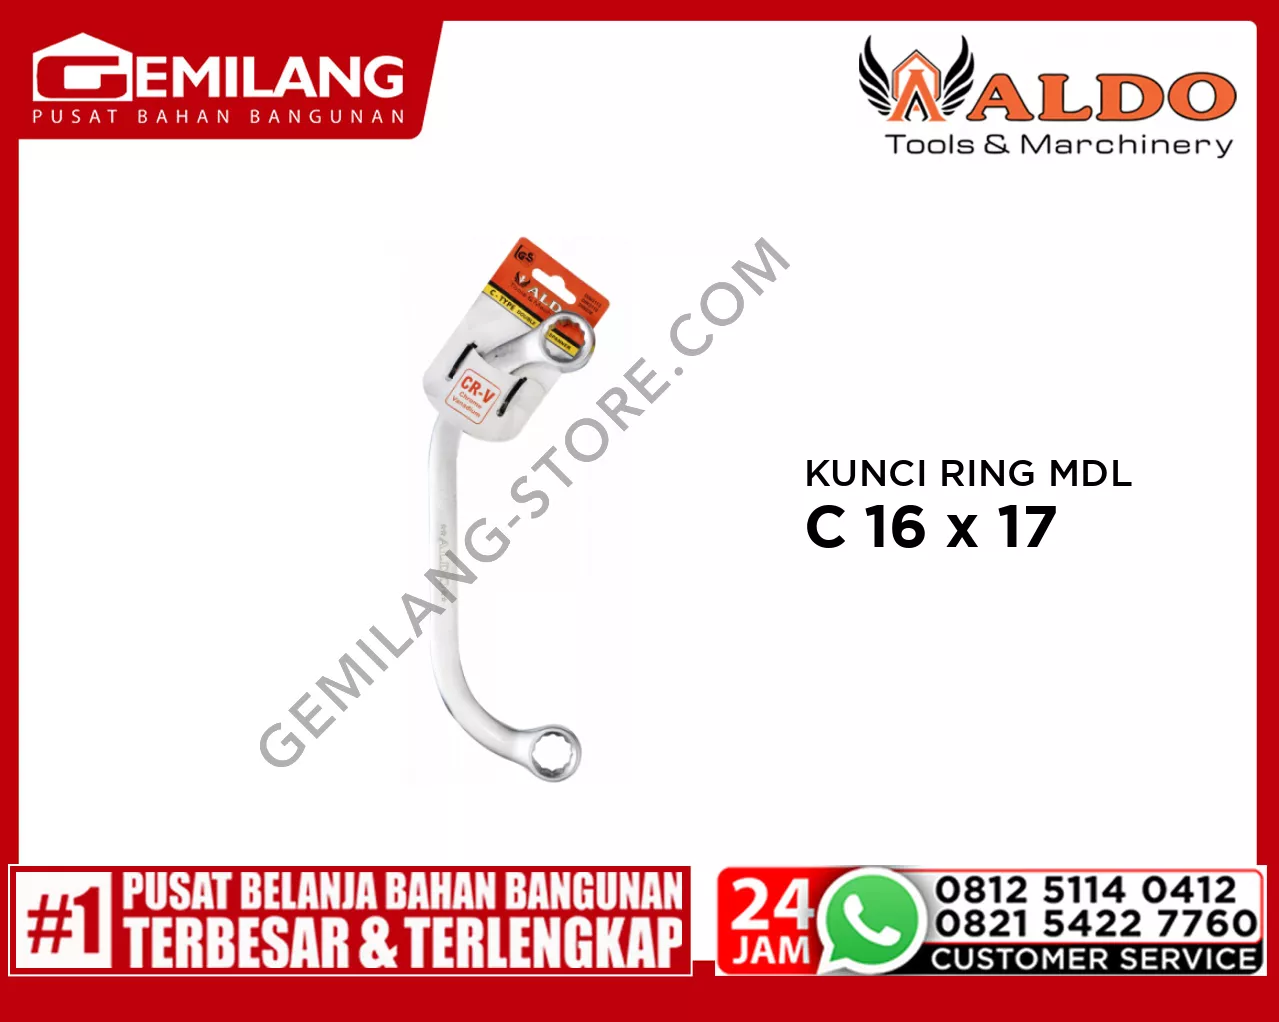 ALDO KUNCI RING MODEL C 16 x 17